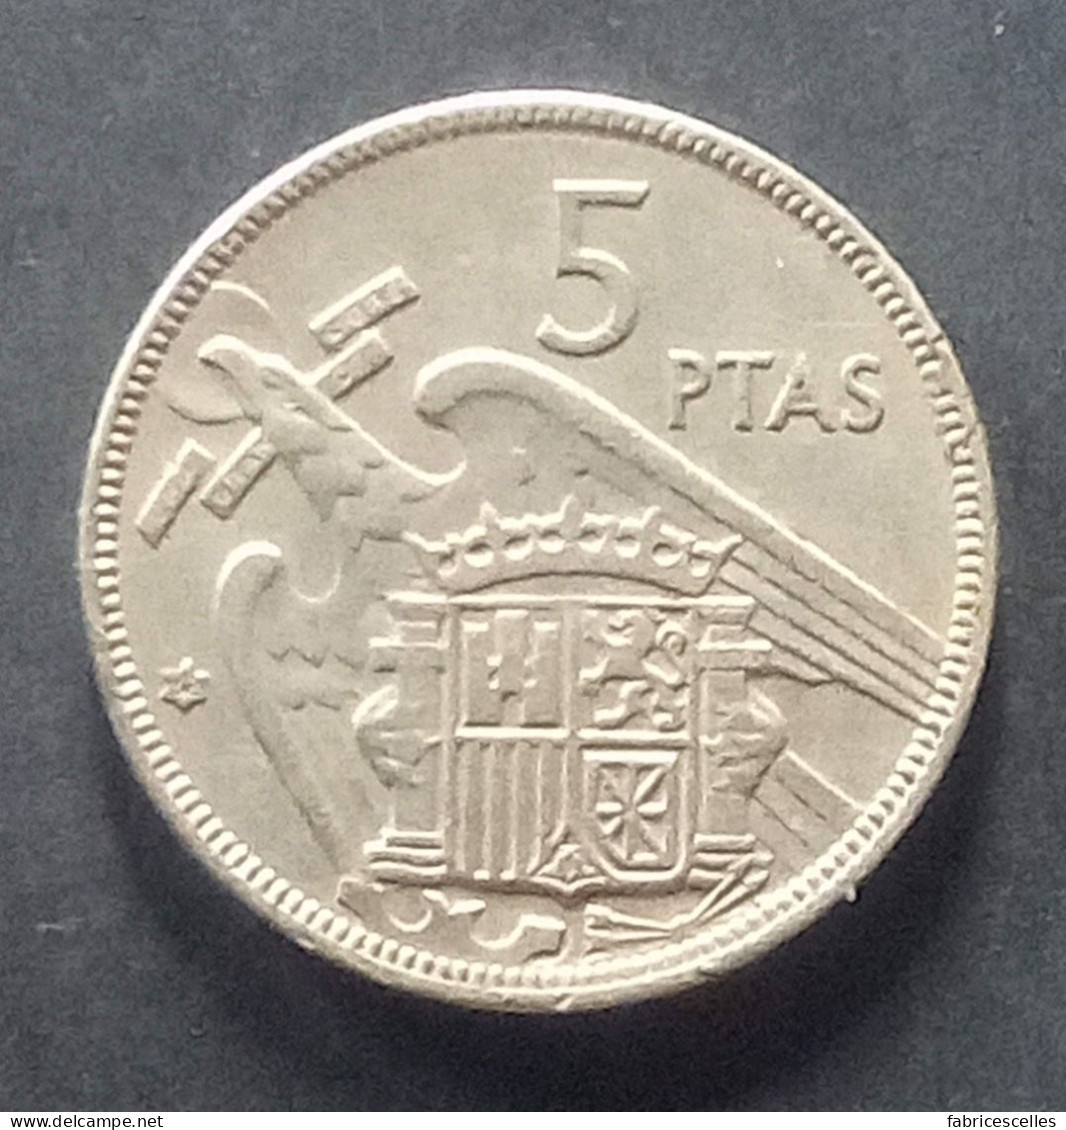 Espagne - Pièce De 5 Pesetas 1957 (Franco) - 5 Pesetas